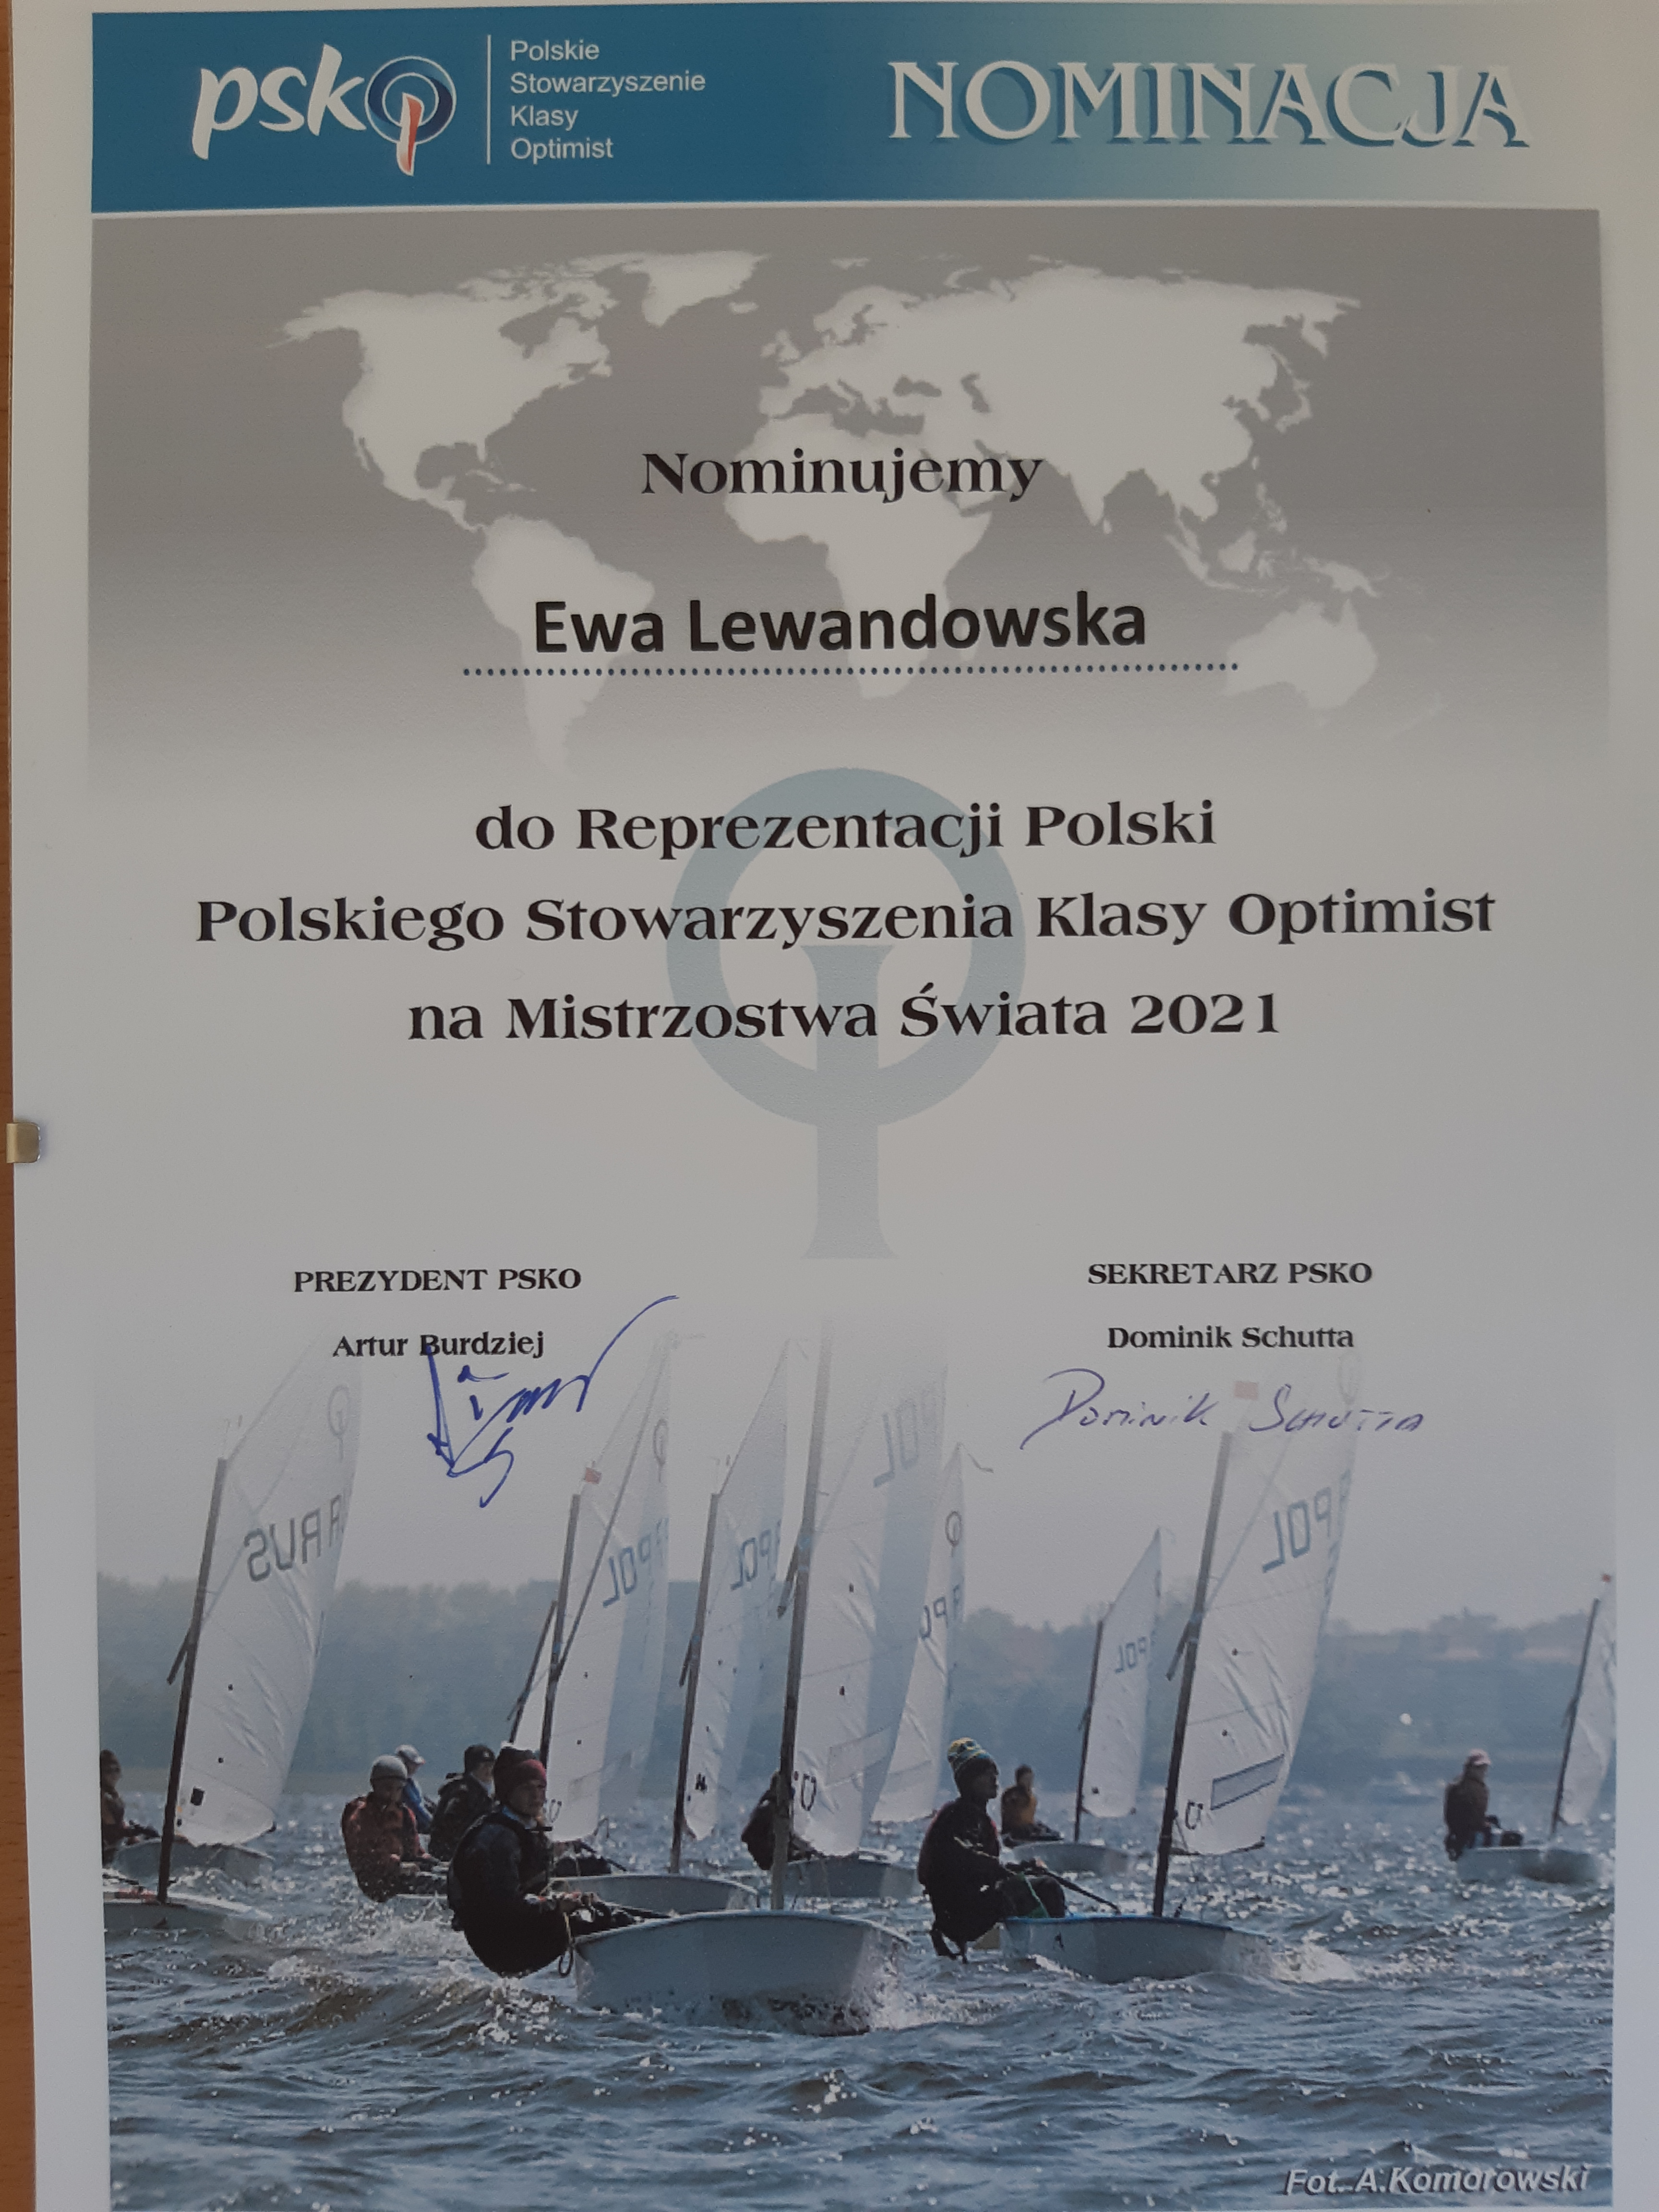 Zdjęcie dokumentu potwierdzającego nominację Ewy Lewandowskiej do Reprezentacji Polski w klasie Optimist na Mistrzostwach Świata w 2021